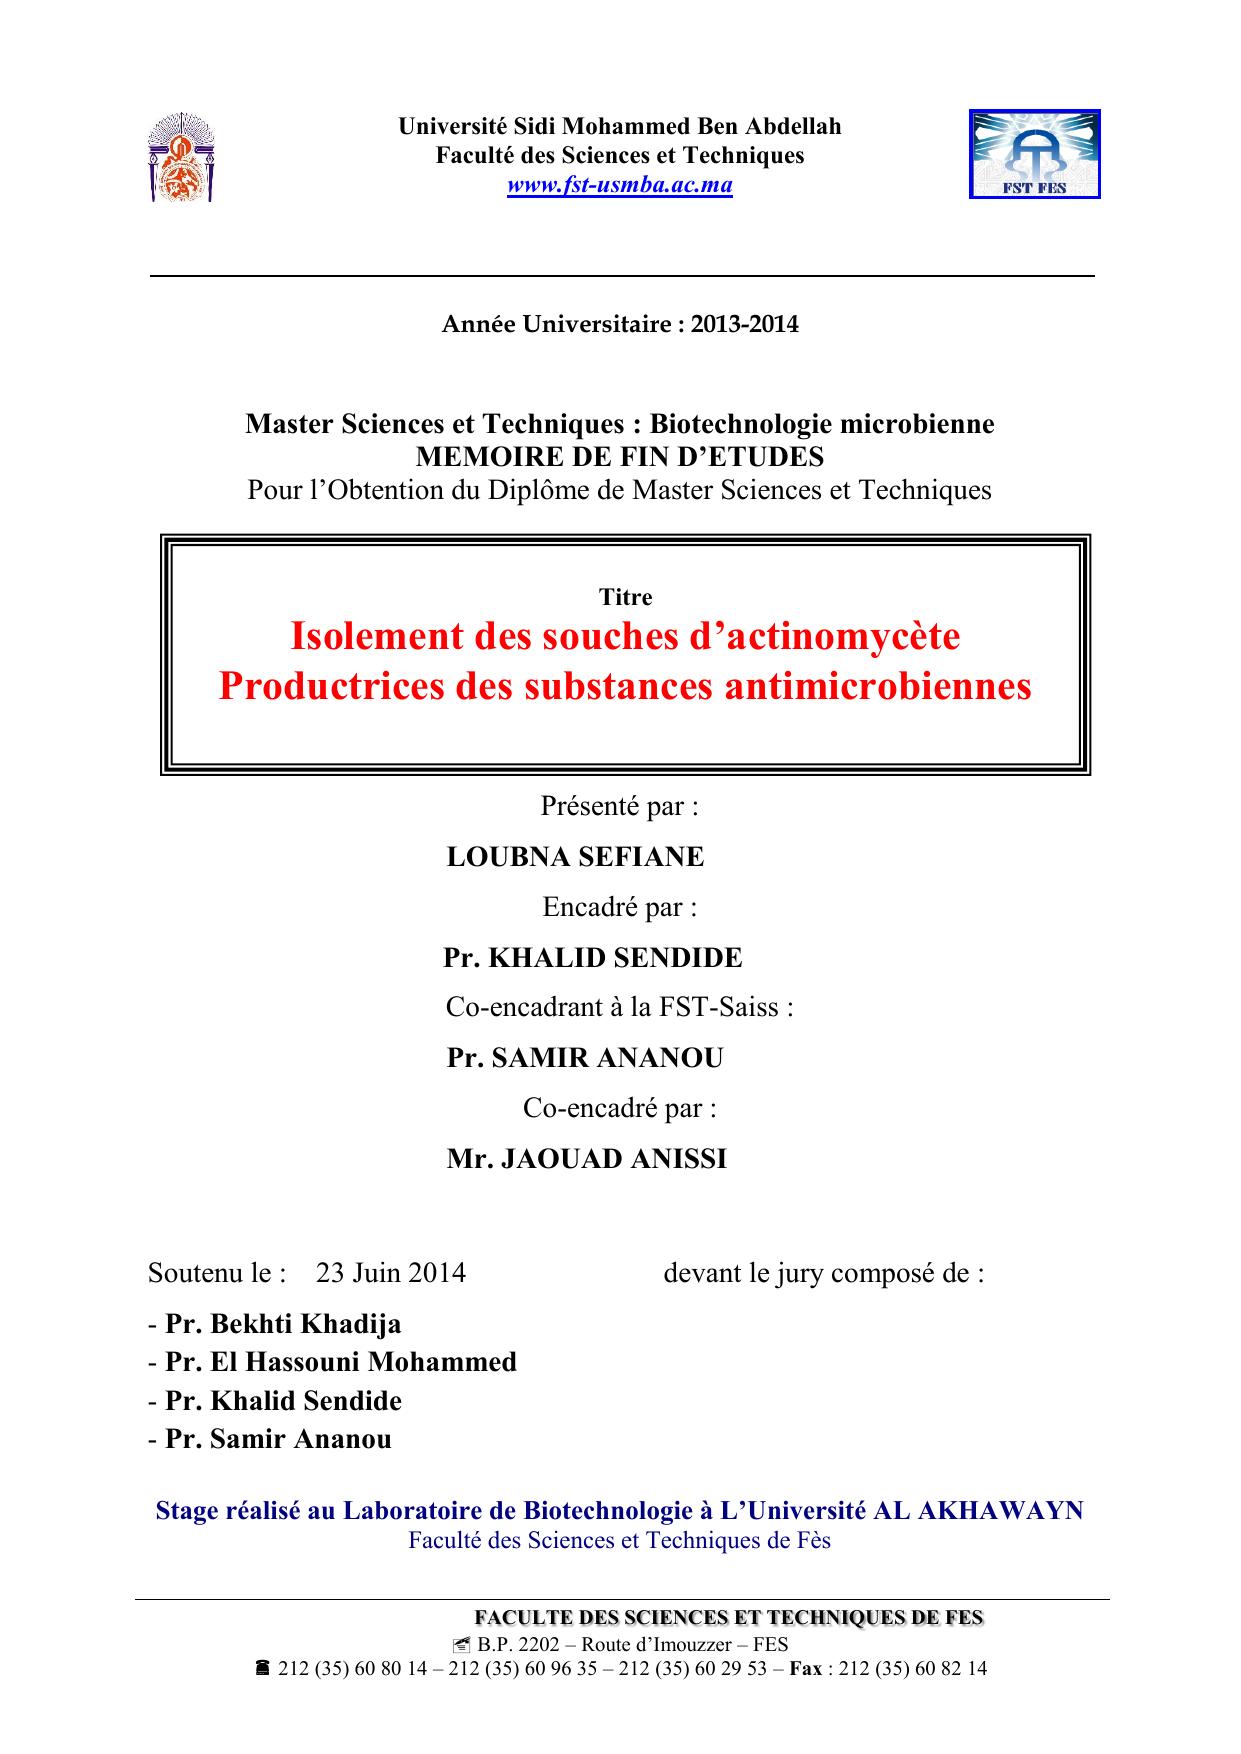 Isolement des souches d’actinomycète Productrices des substances antimicrobiennes